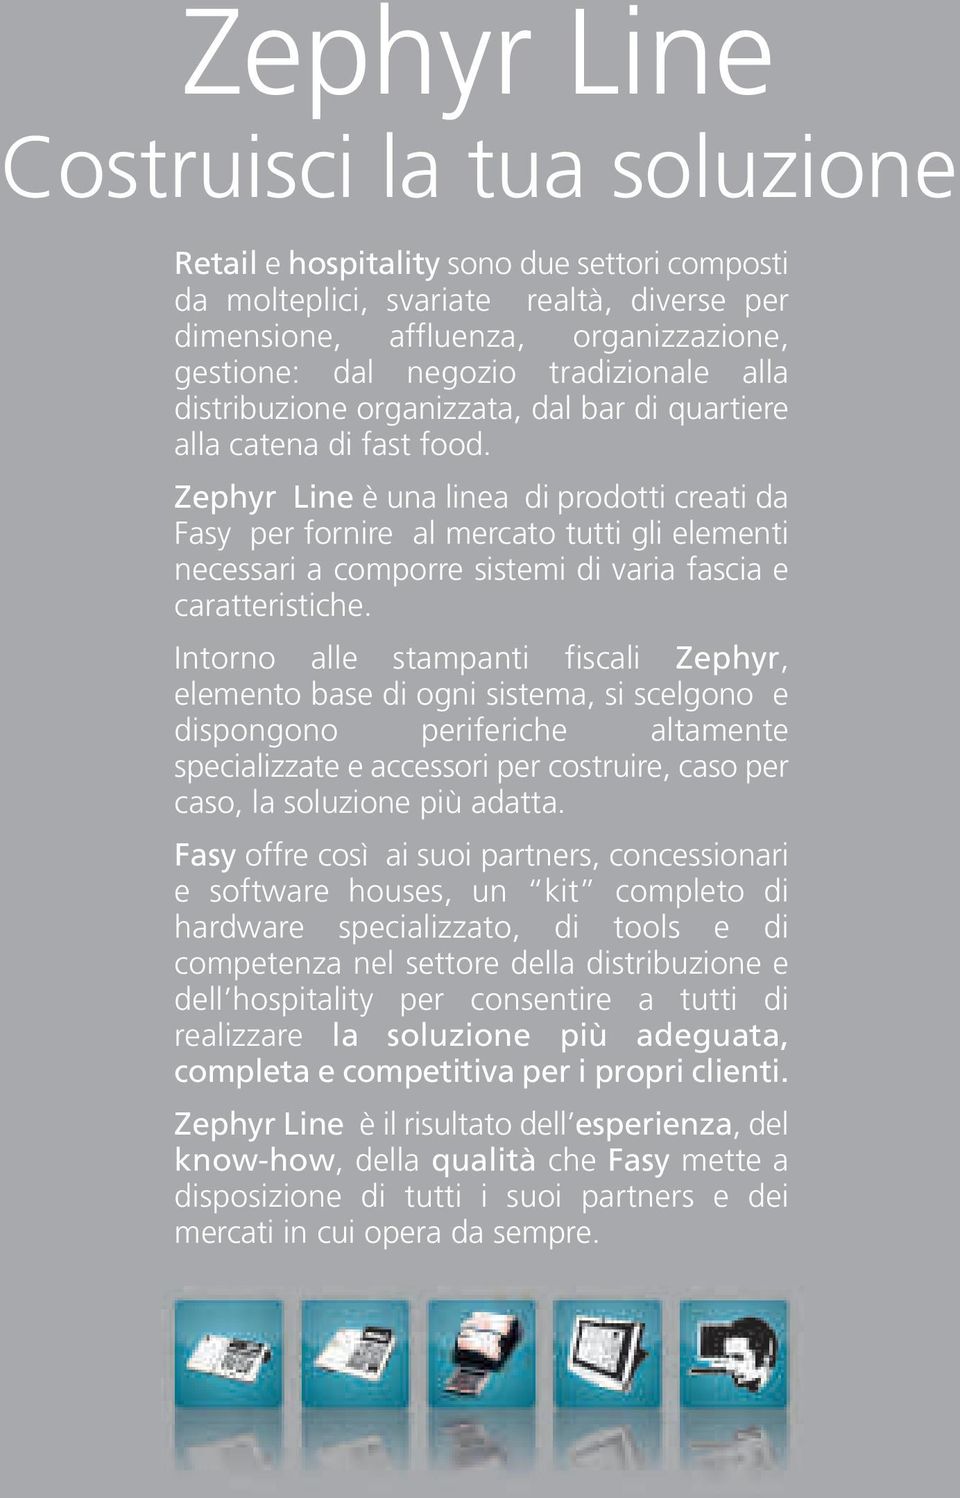 Zephyr Line è una linea di prodotti creati da Fasy per fornire al mercato tutti gli elementi necessari a comporre sistemi di varia fascia e caratteristiche.